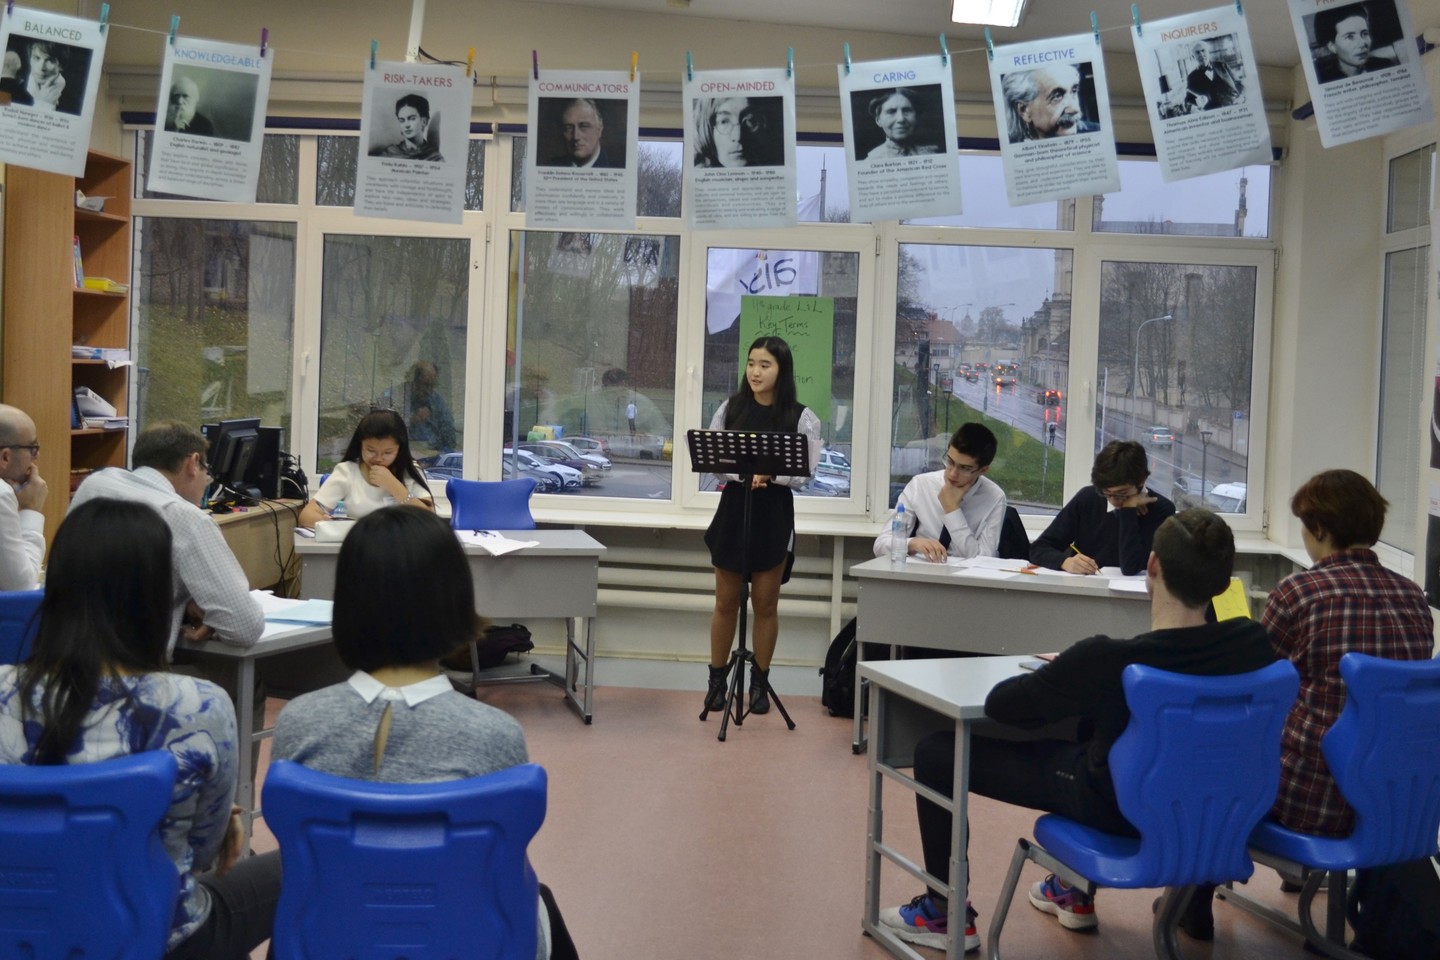  Renginio metu keliose debatų ir oratorinio meno kategorijose varžėsi moksleiviai iš šių tarptautinių mokyklų.<br> AISV nuotr.